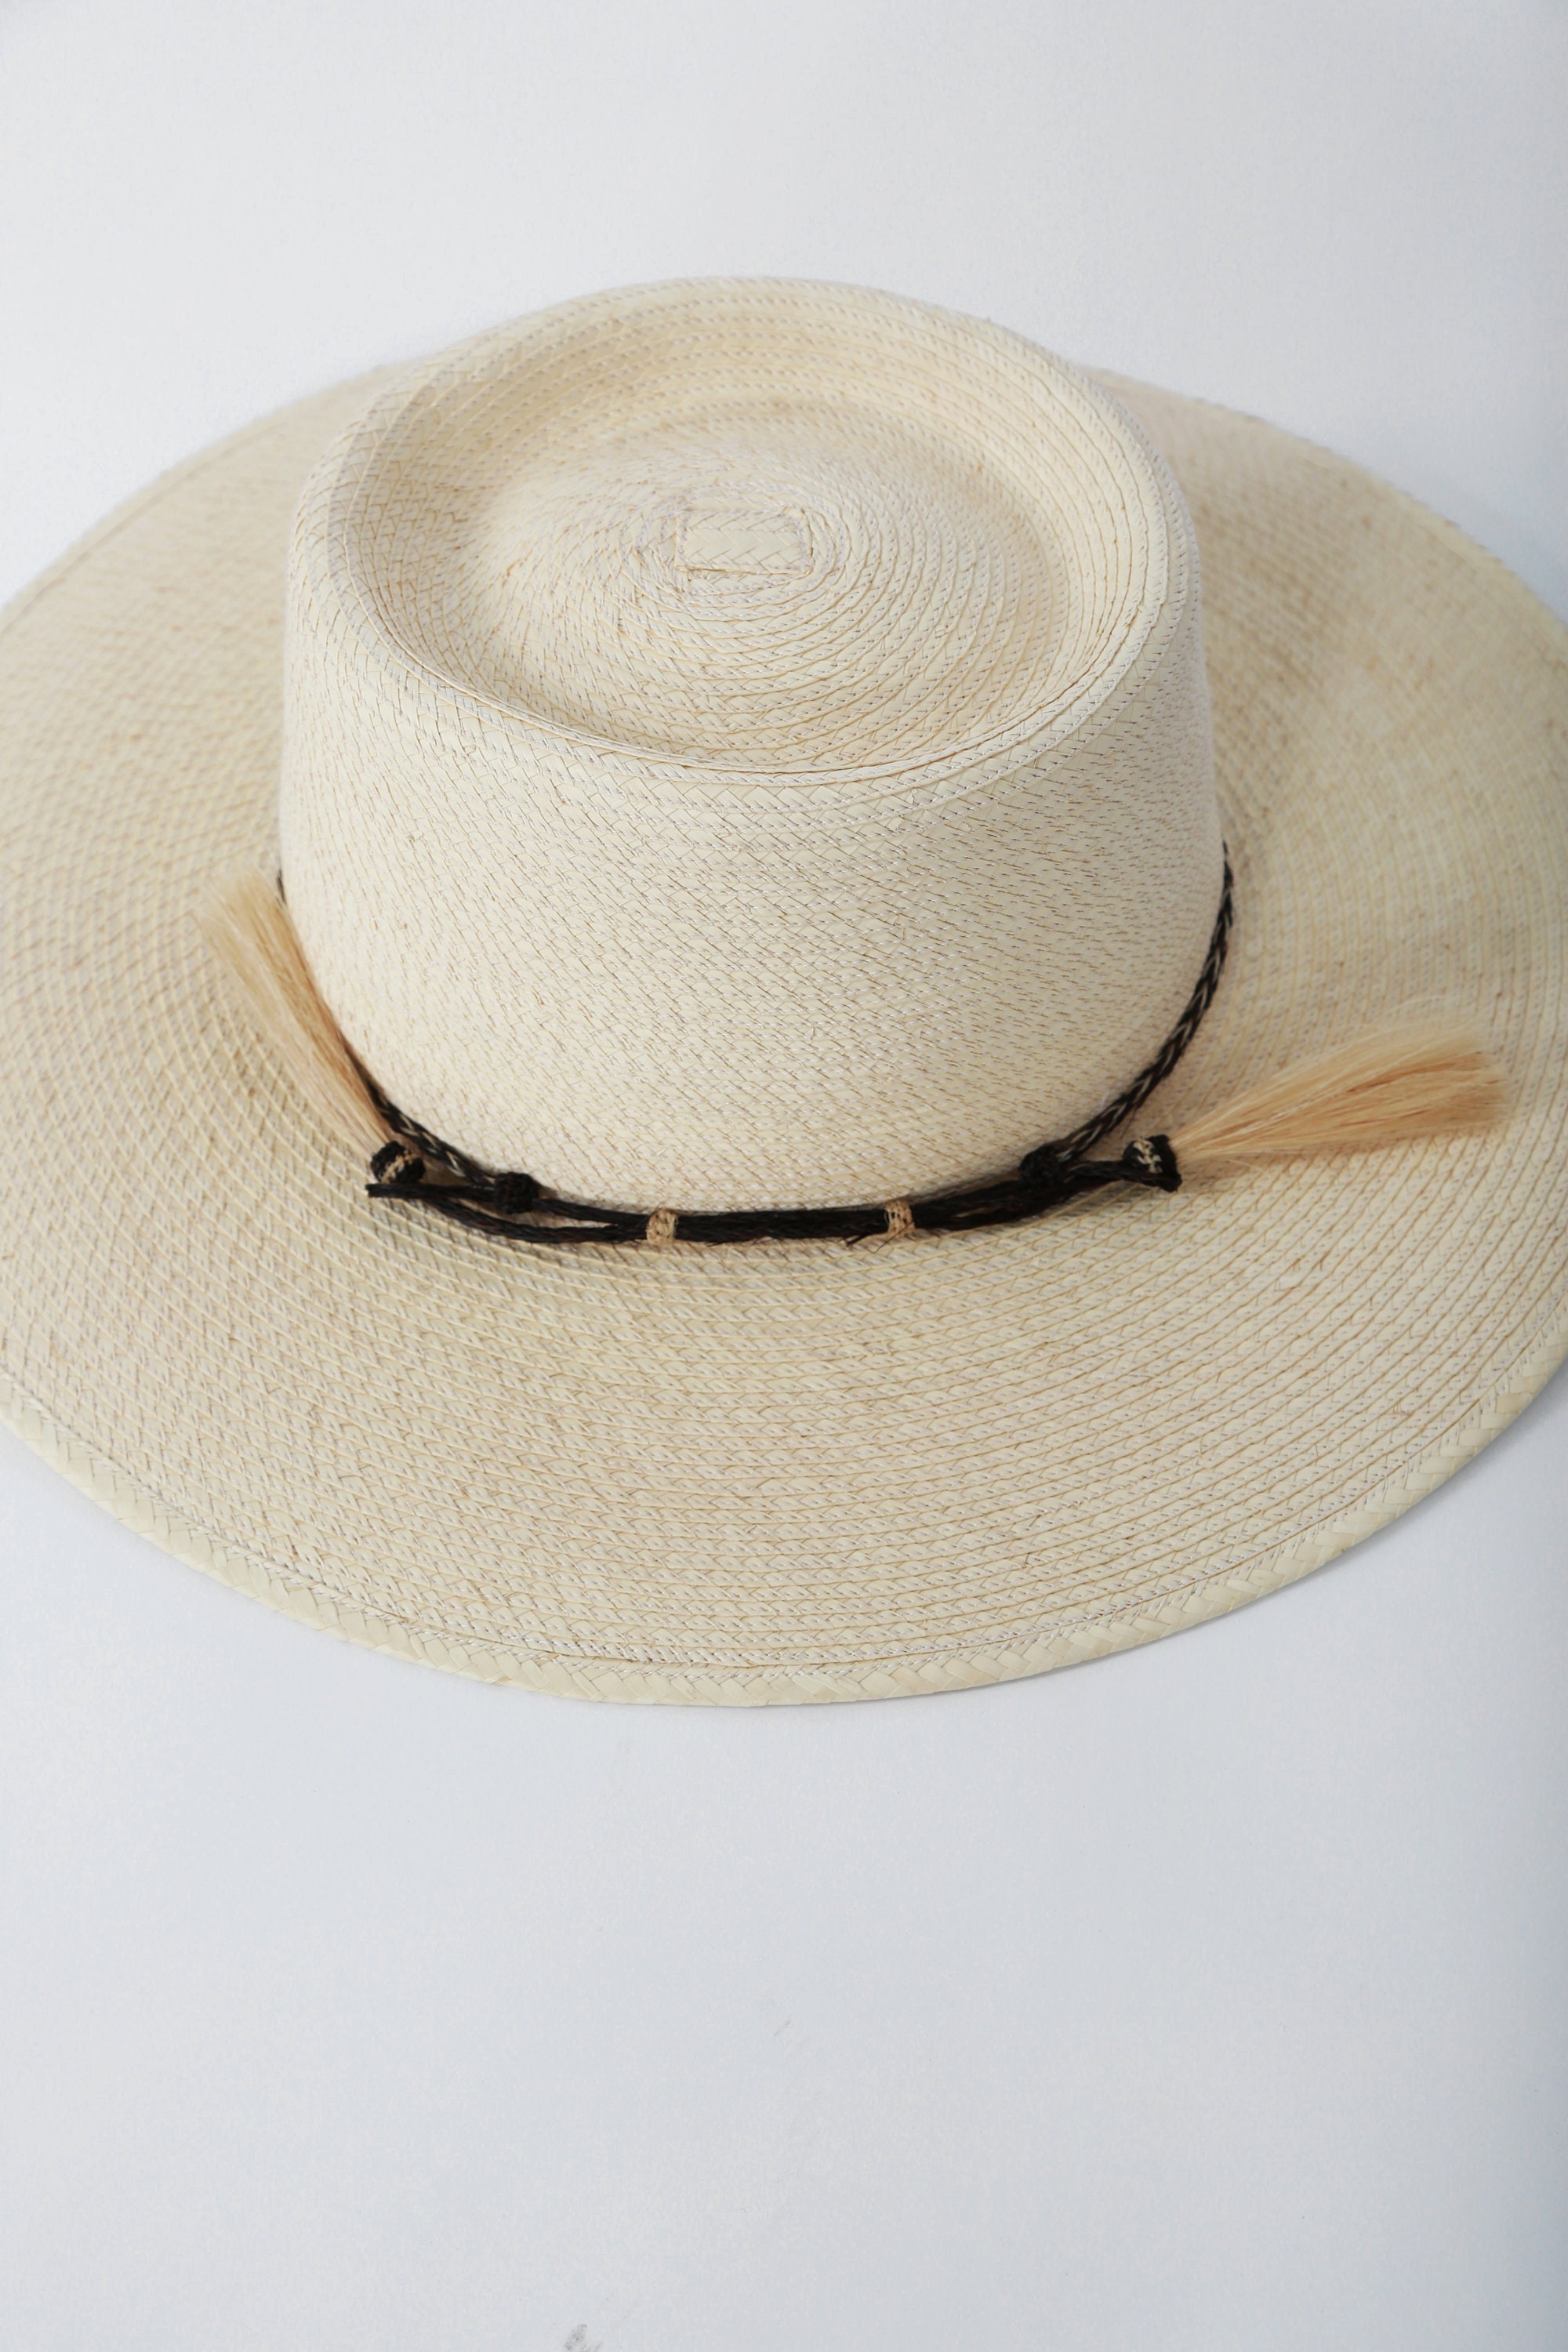 Accesorios Sombreros y gorras Sombreros gorras y viseras Gorros para el sol Vintage Sun Body palm leaf telescope sombrero 7 1/4 